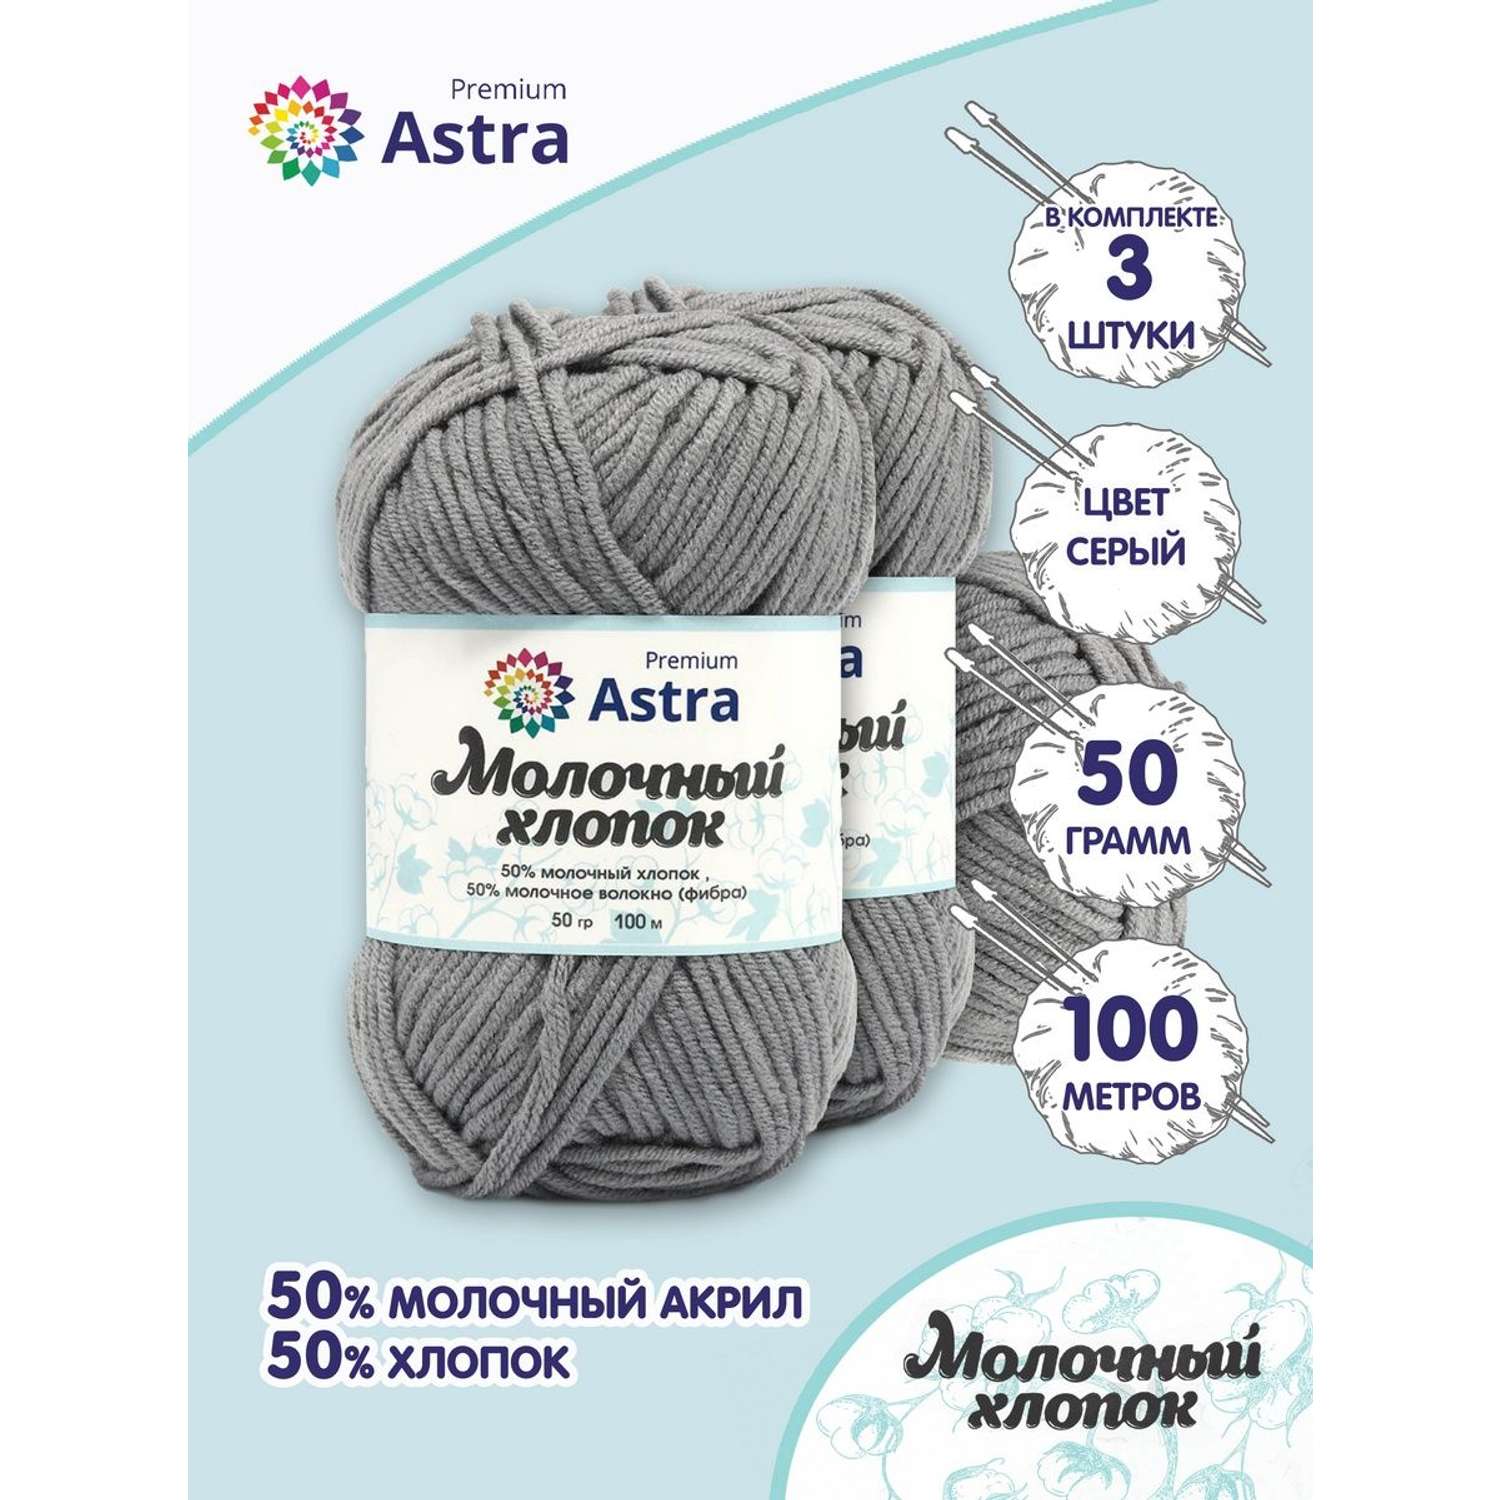 Пряжа для вязания Astra Premium milk cotton хлопок акрил 50 гр 100 м 15 серый 3 мотка - фото 1